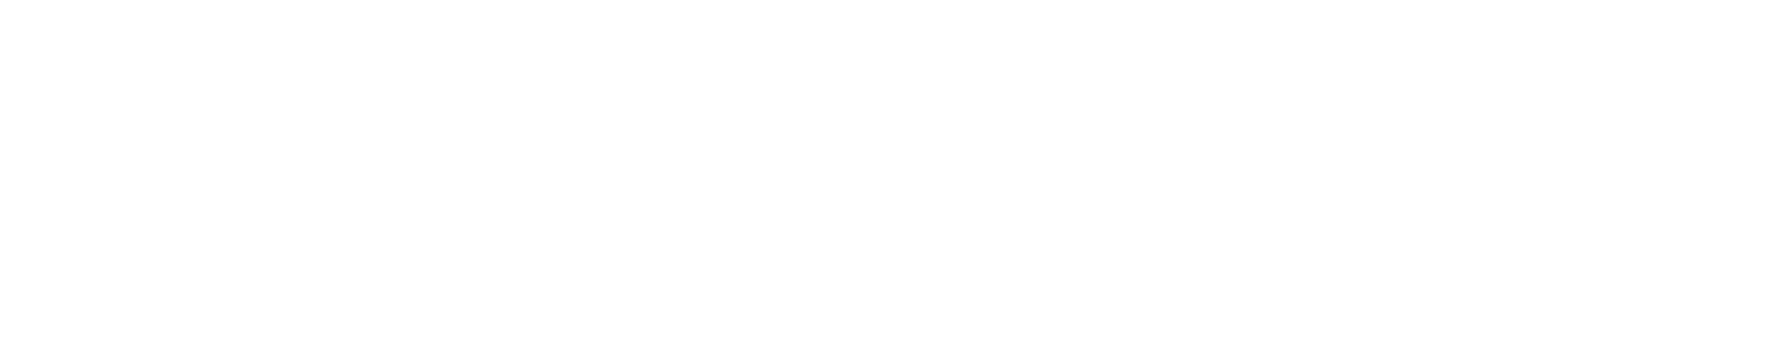 logo-wit-theunissen-tuinverzorging-scherpenzeel-copy.png